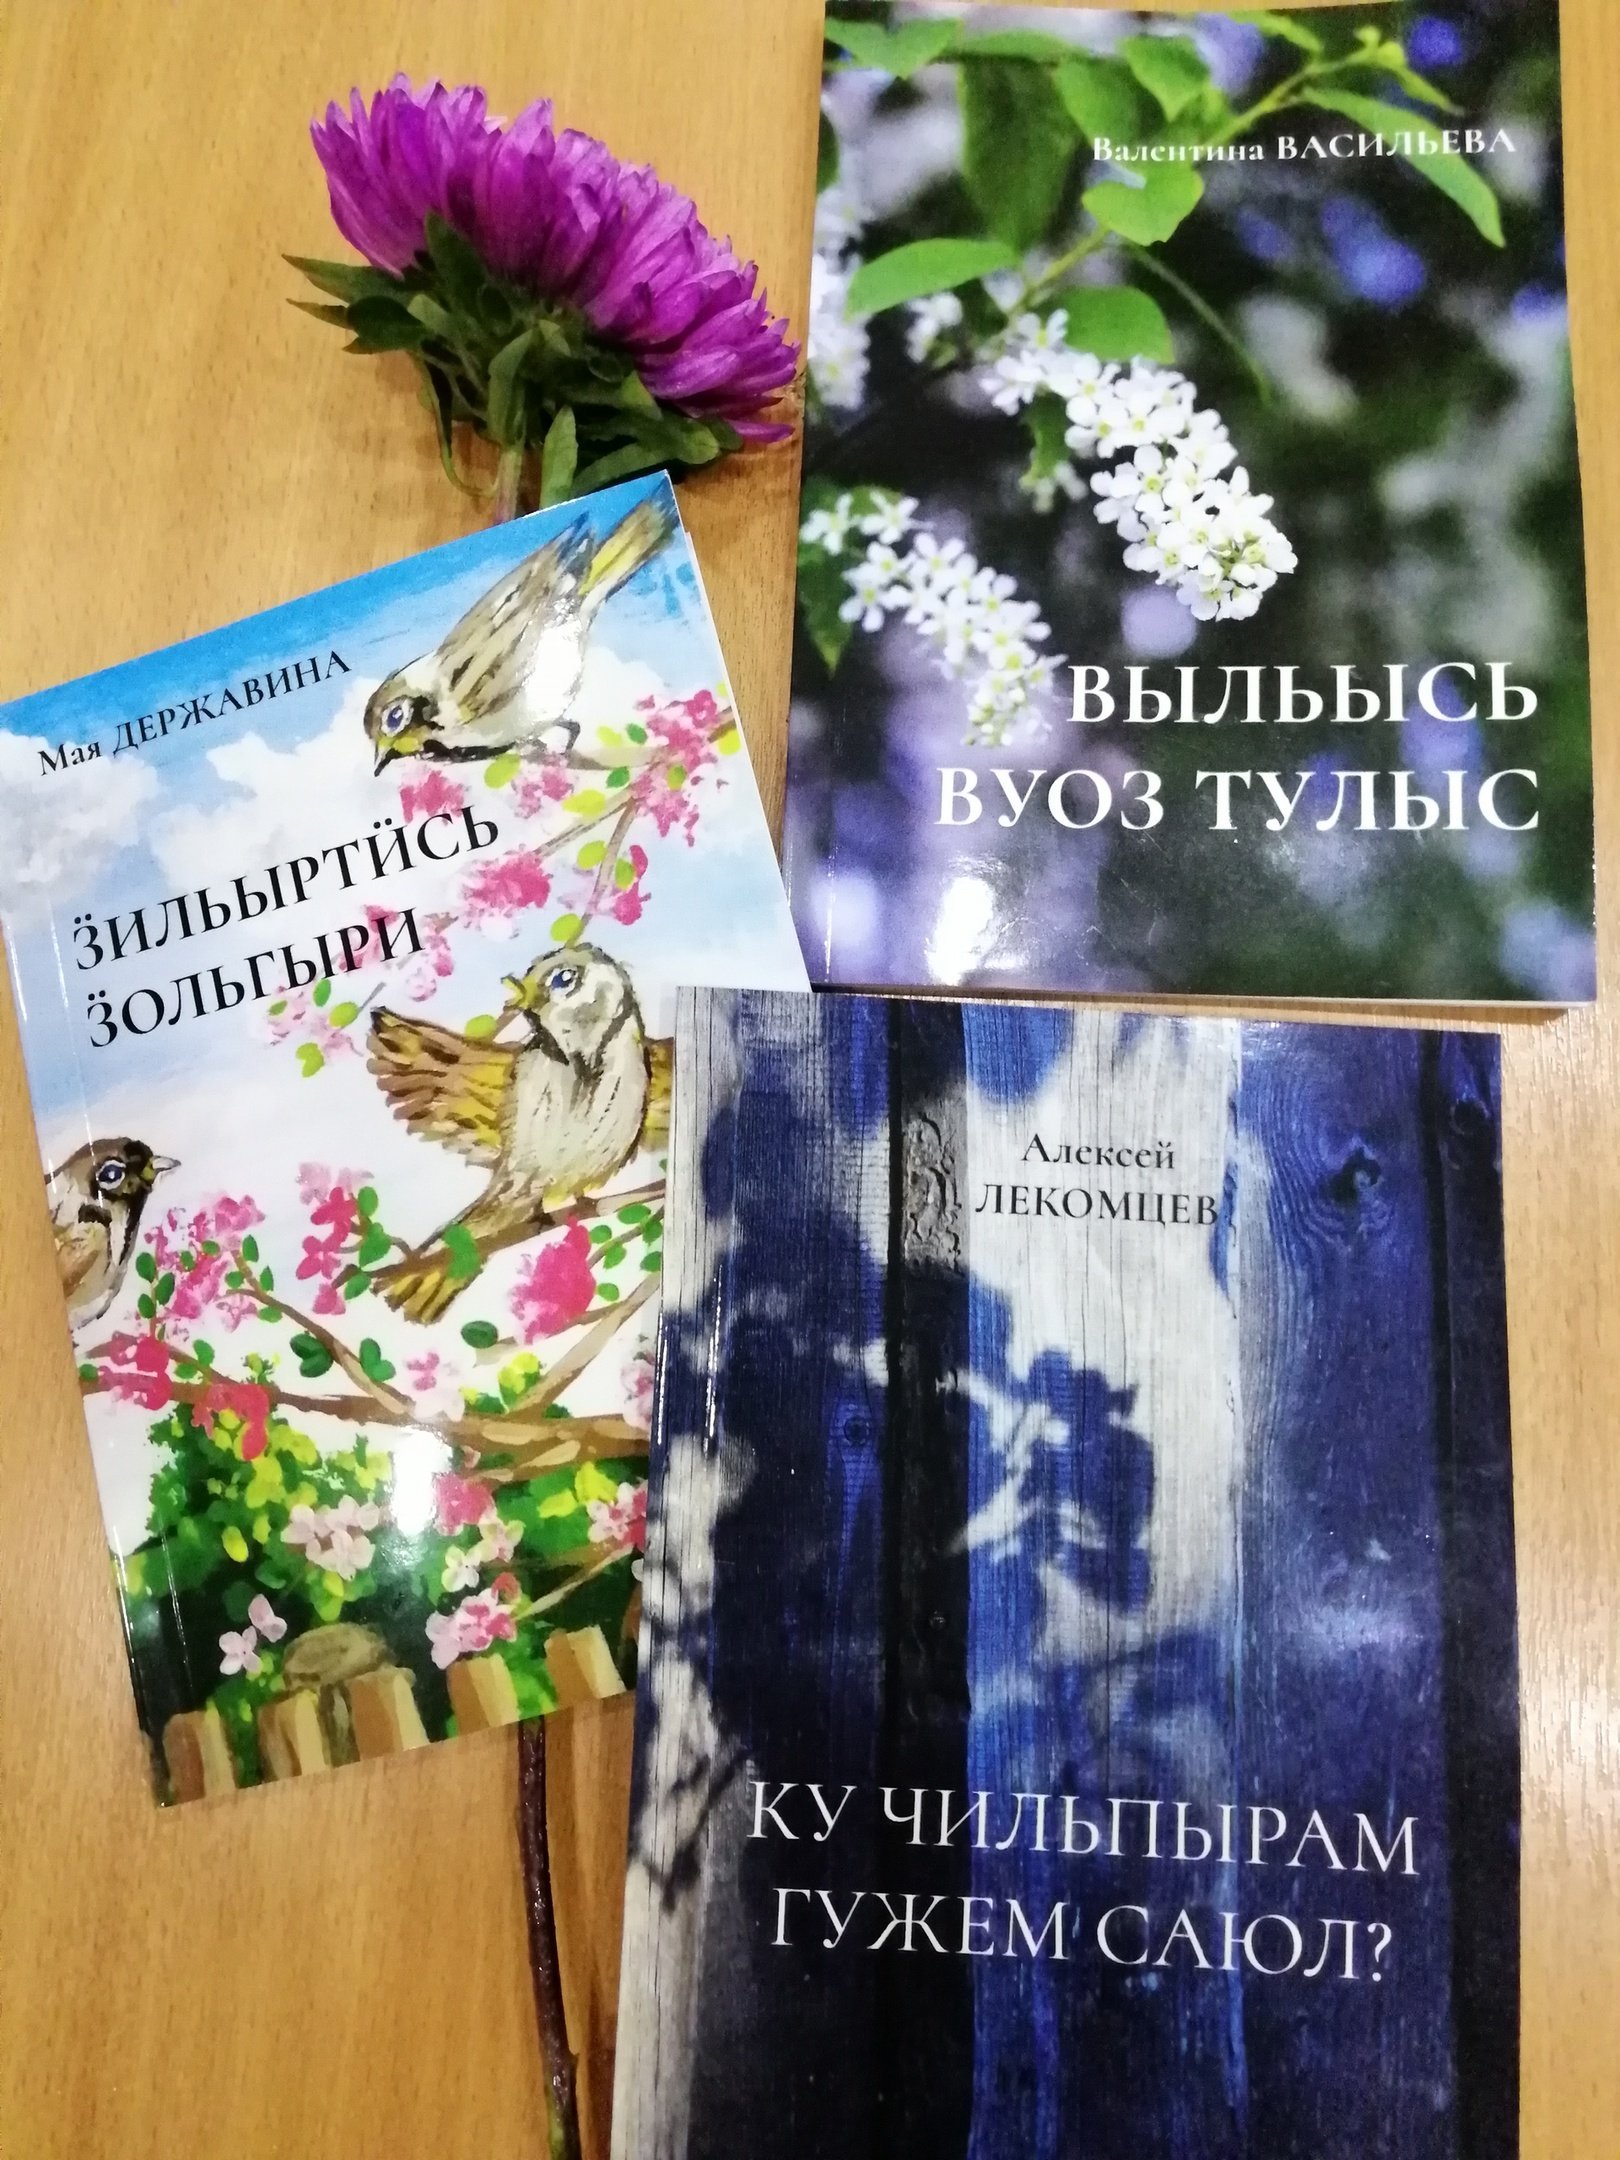 В Удмуртии вышли в свет три новые книги на удмуртском языке